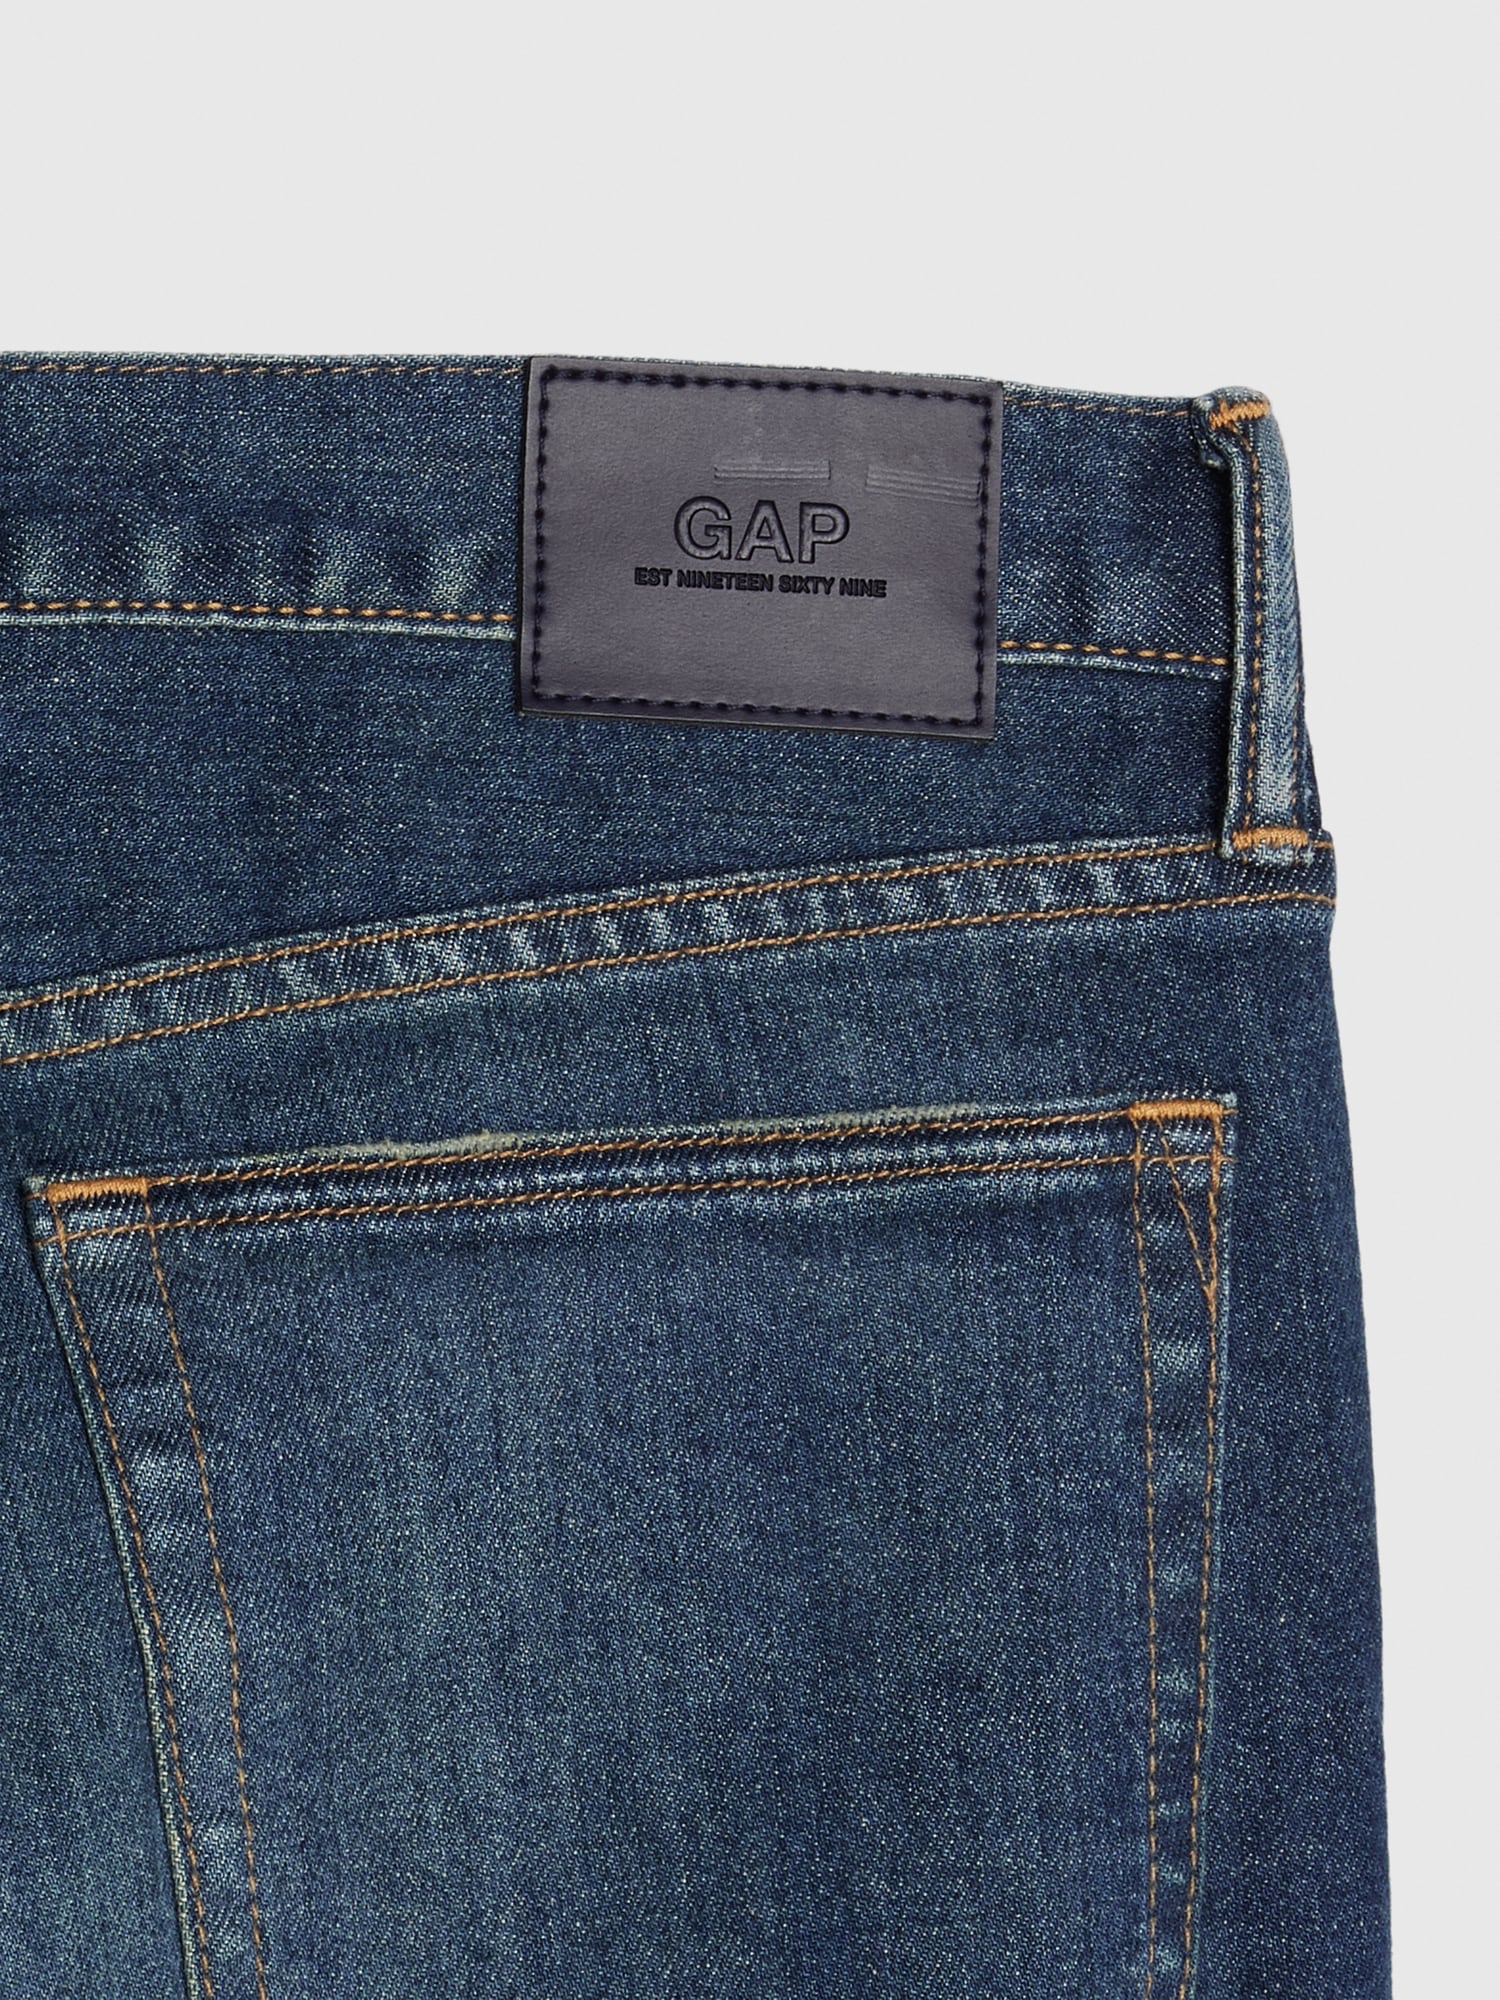 gap denim jeans